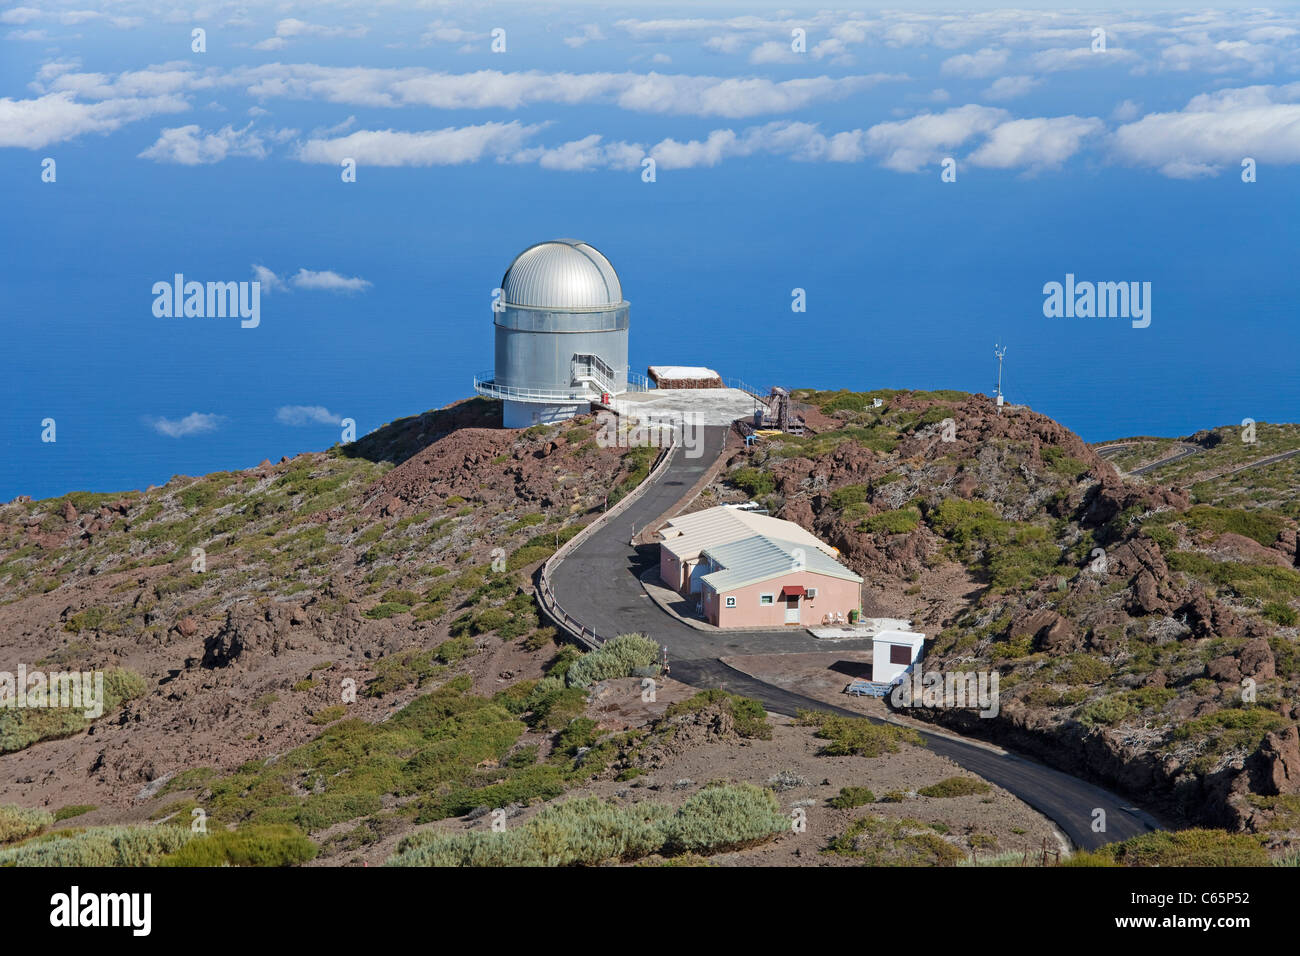 Osservatorio astronomico sulla sommità del Roque de los Muchachos, Parque Nacional de la Caldera de Taburiente, isola di La Palma, Isole canarie, Spagna, Europa Foto Stock